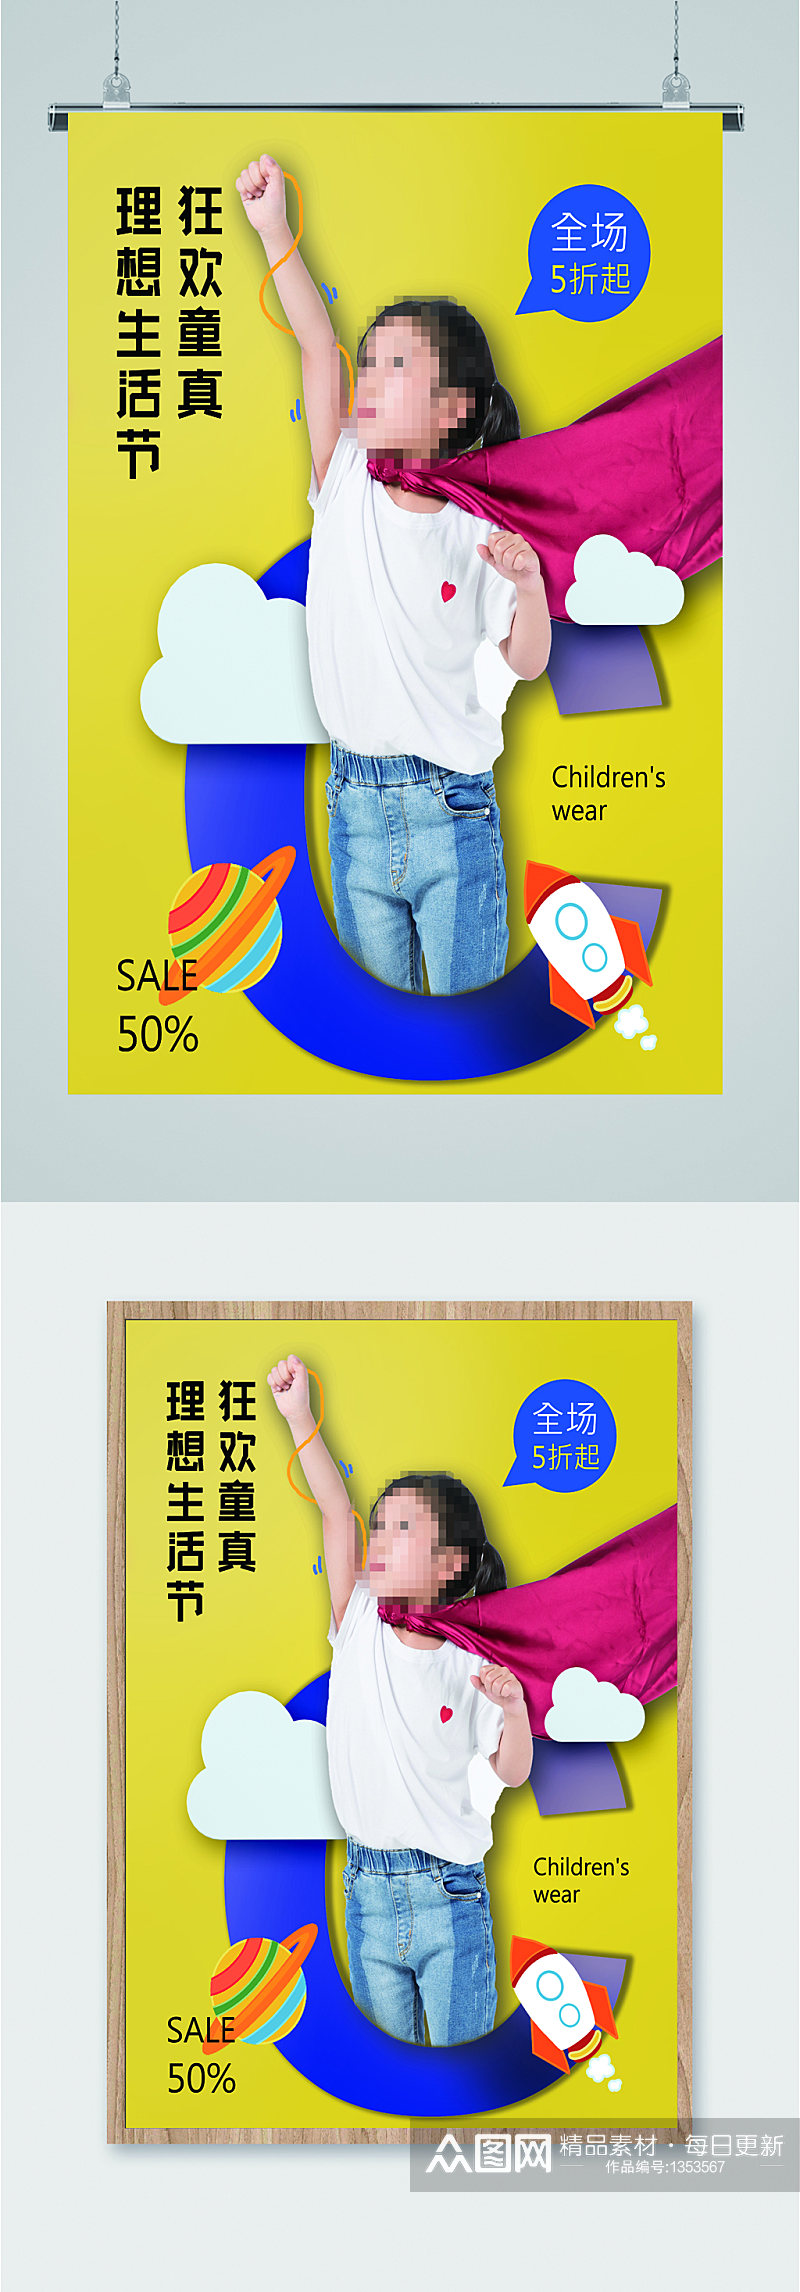 儿童节节日宣传海报素材